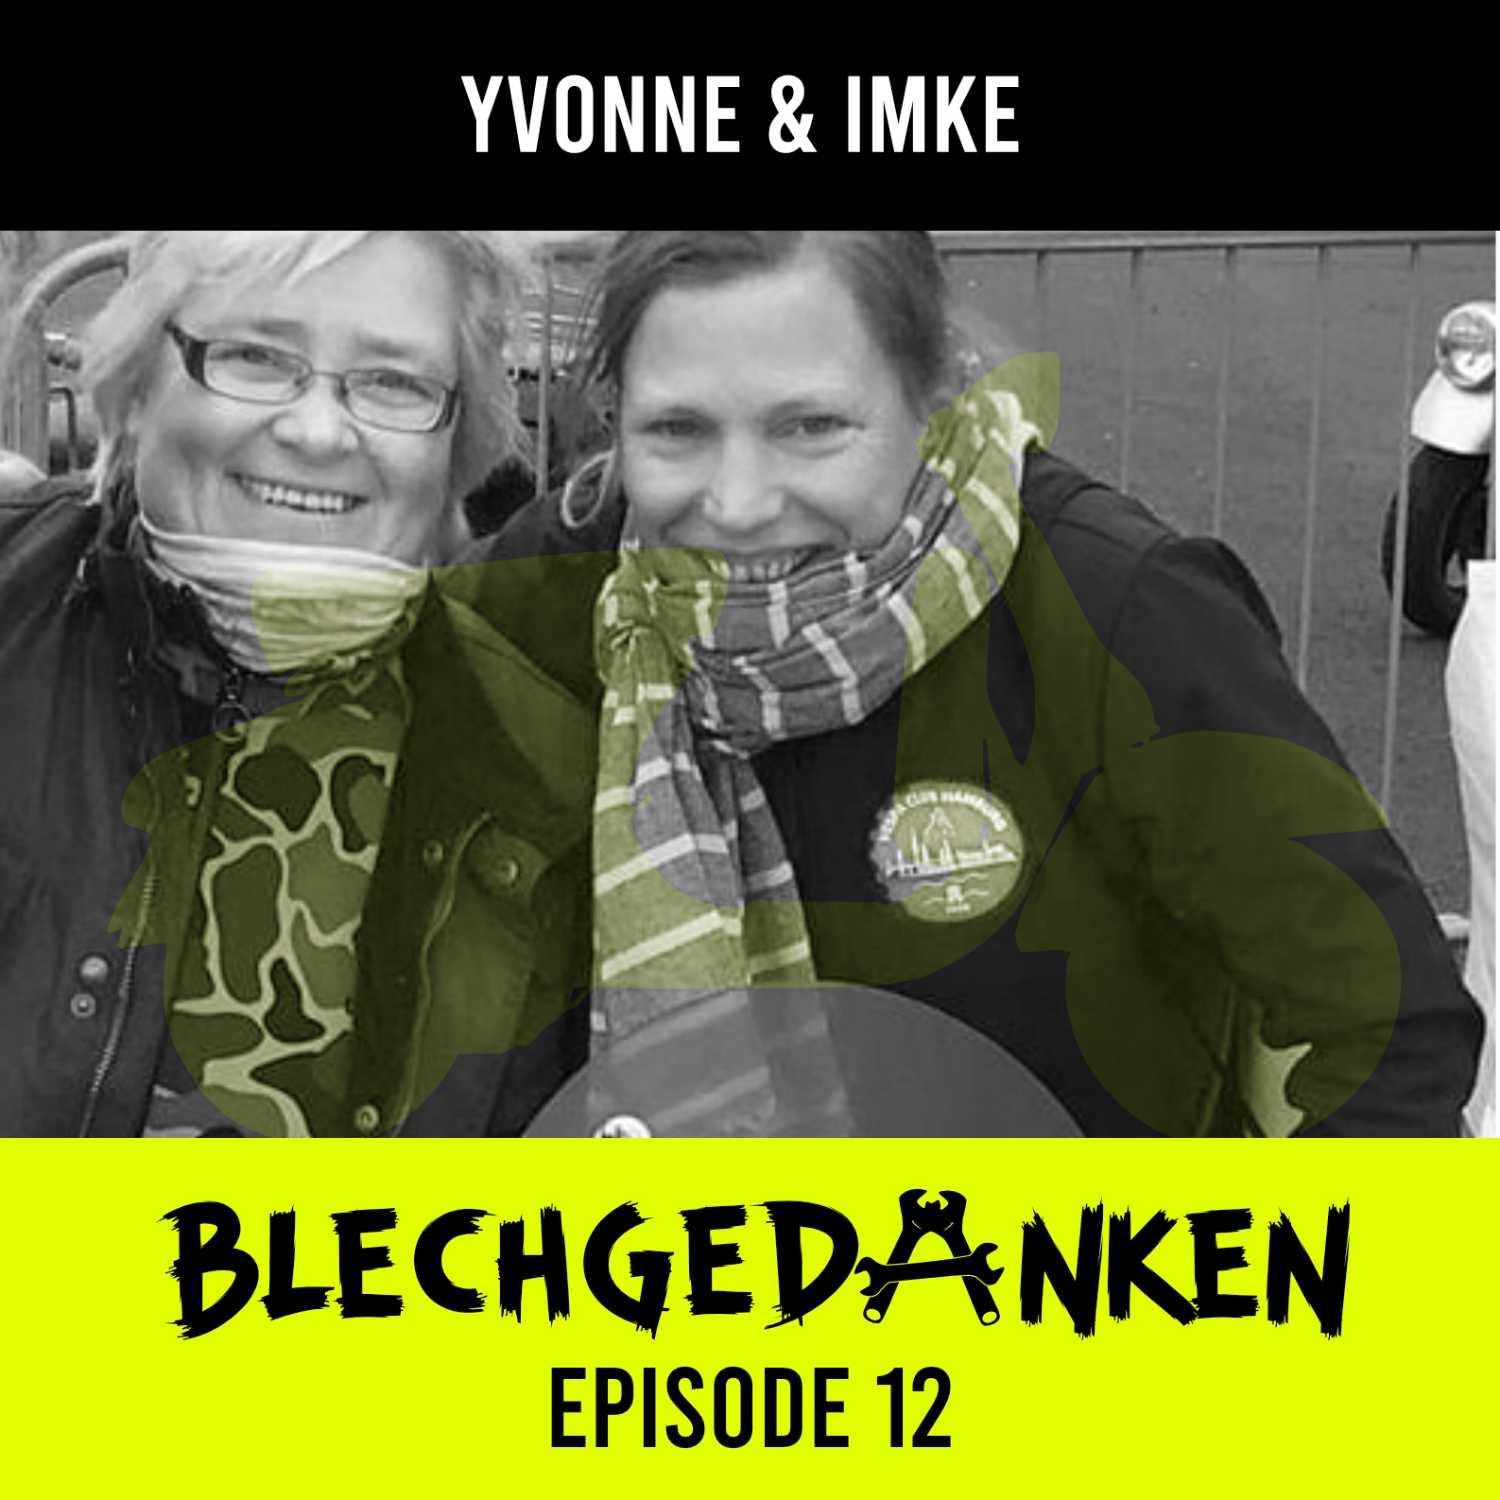 Blechgedanken Episode 12 – Yvonne & Imke – Zwei norddeutsche Vespadeern - always on da road…